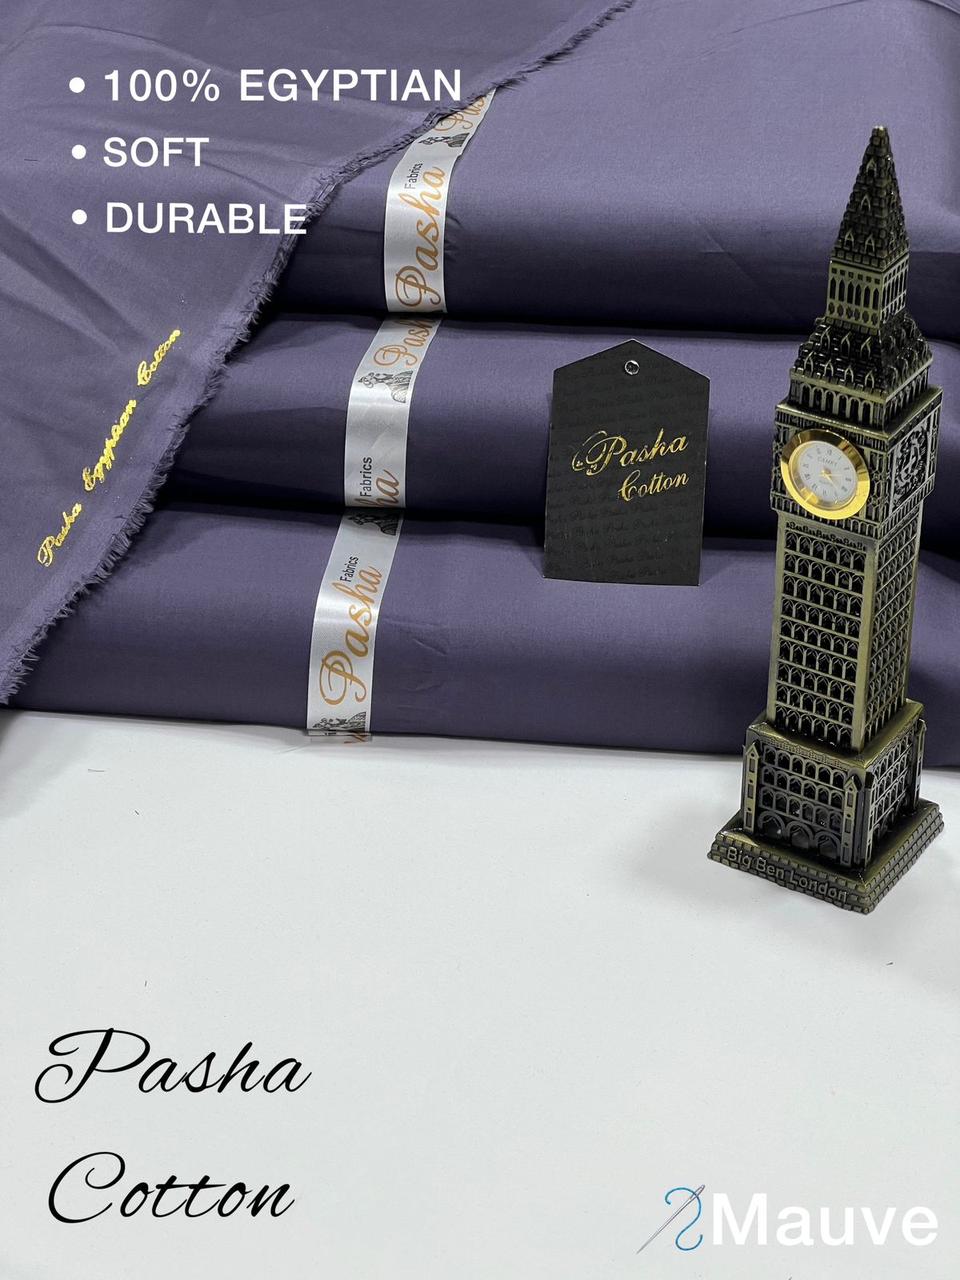 PASHA Premium Quality Soft Cotton Unstitched Suit for Men | Mauve